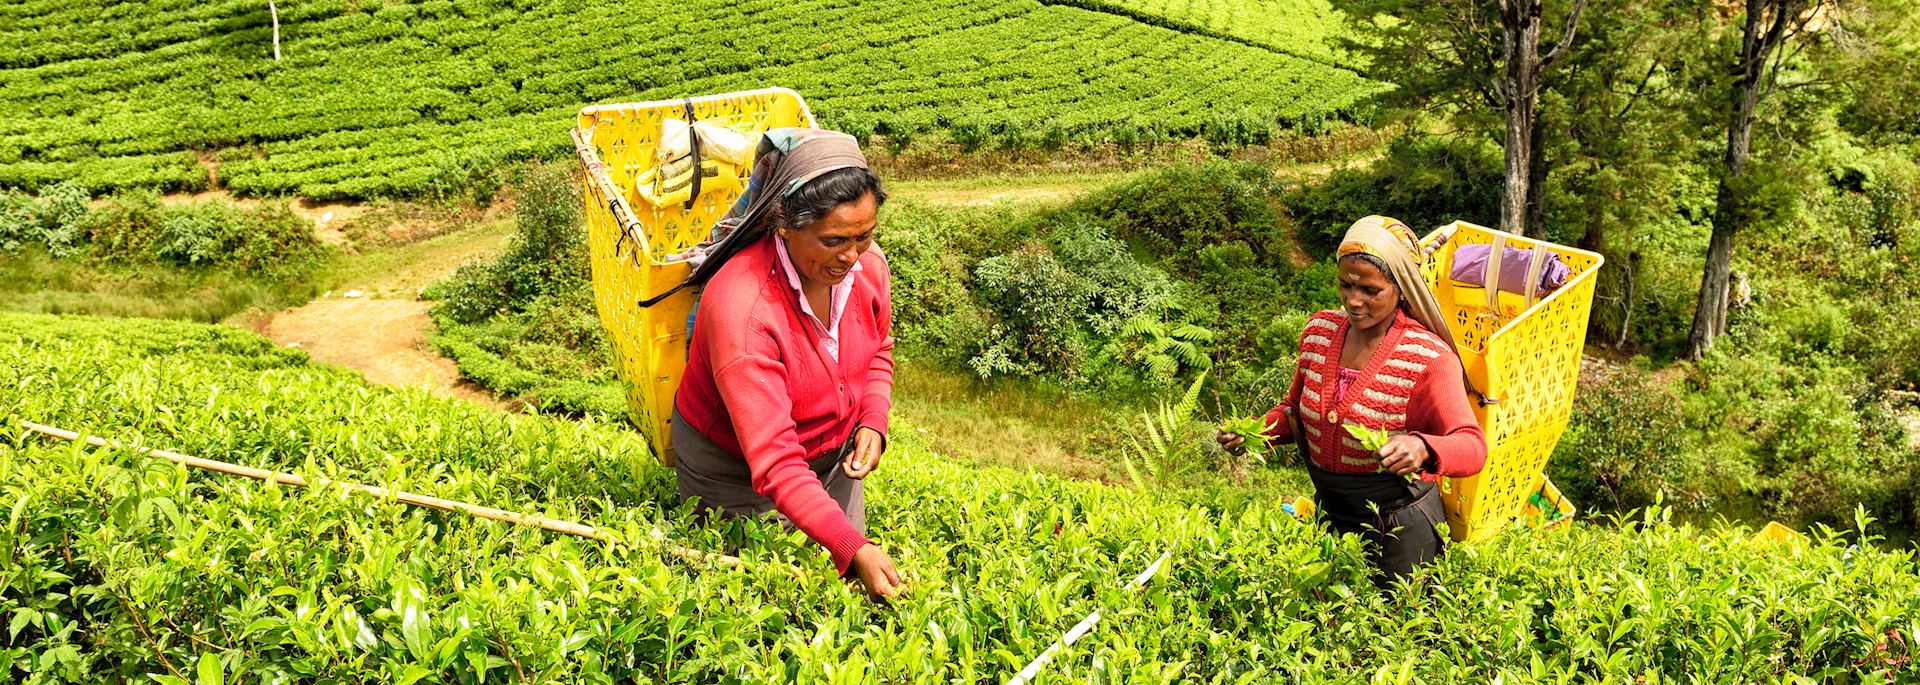 Tea pickers in Nuwara Eliya